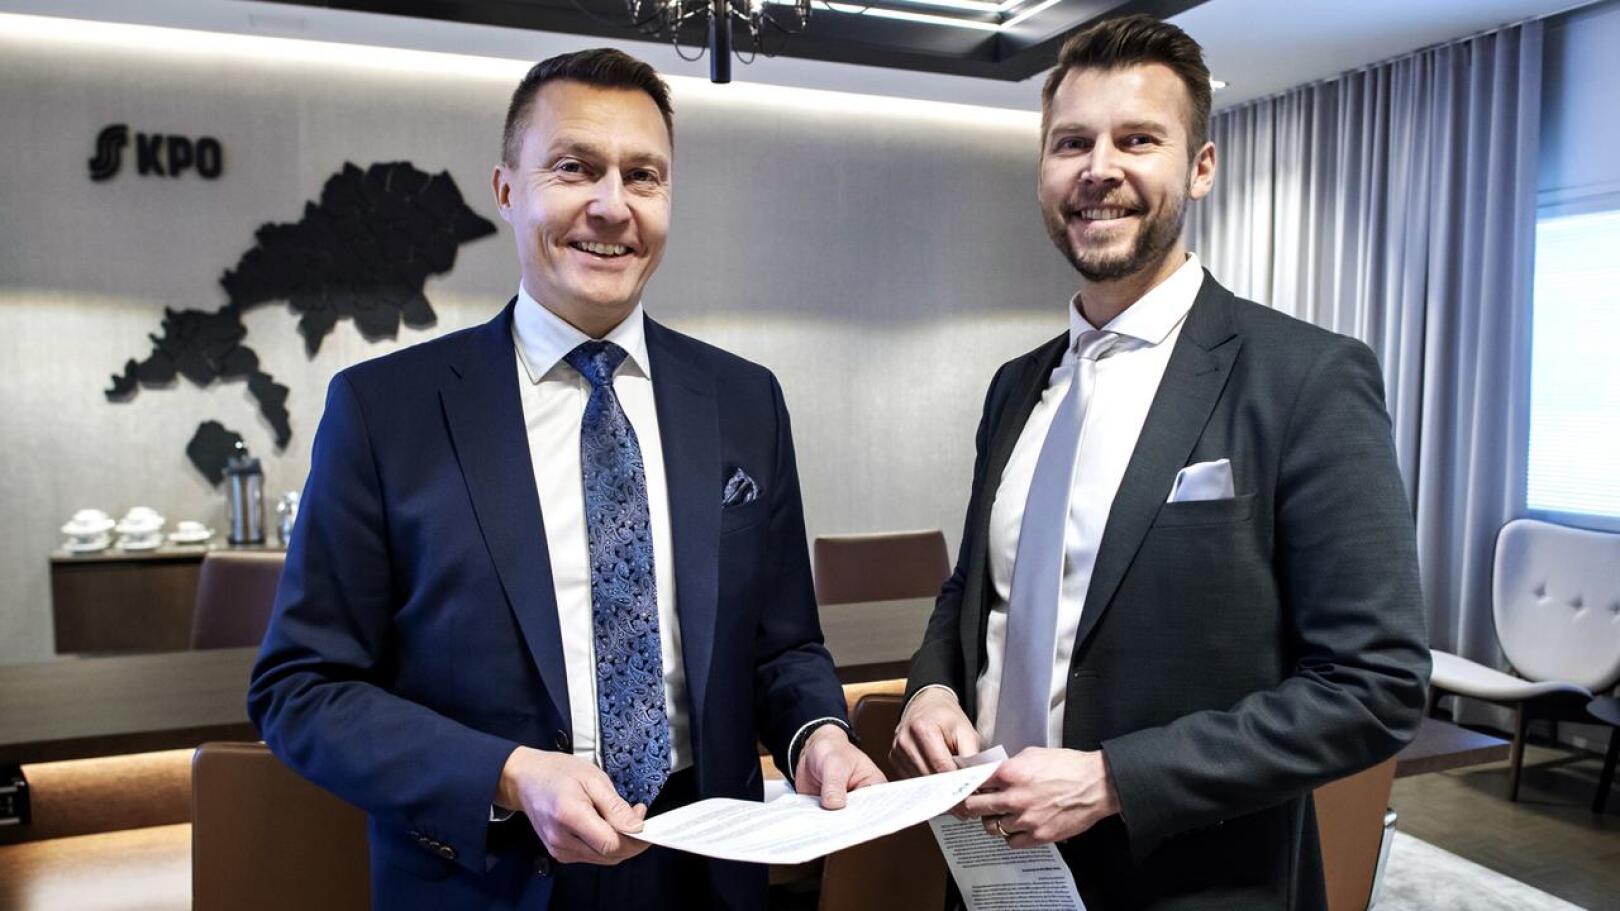 Osuuskauppa KPO:n toimitusjohtaja Kim Biskop (vas.) ja talousjohtaja Matti Laukka kertoivat viime vuoden tuloksestan sekä uusista suunnitelmista.